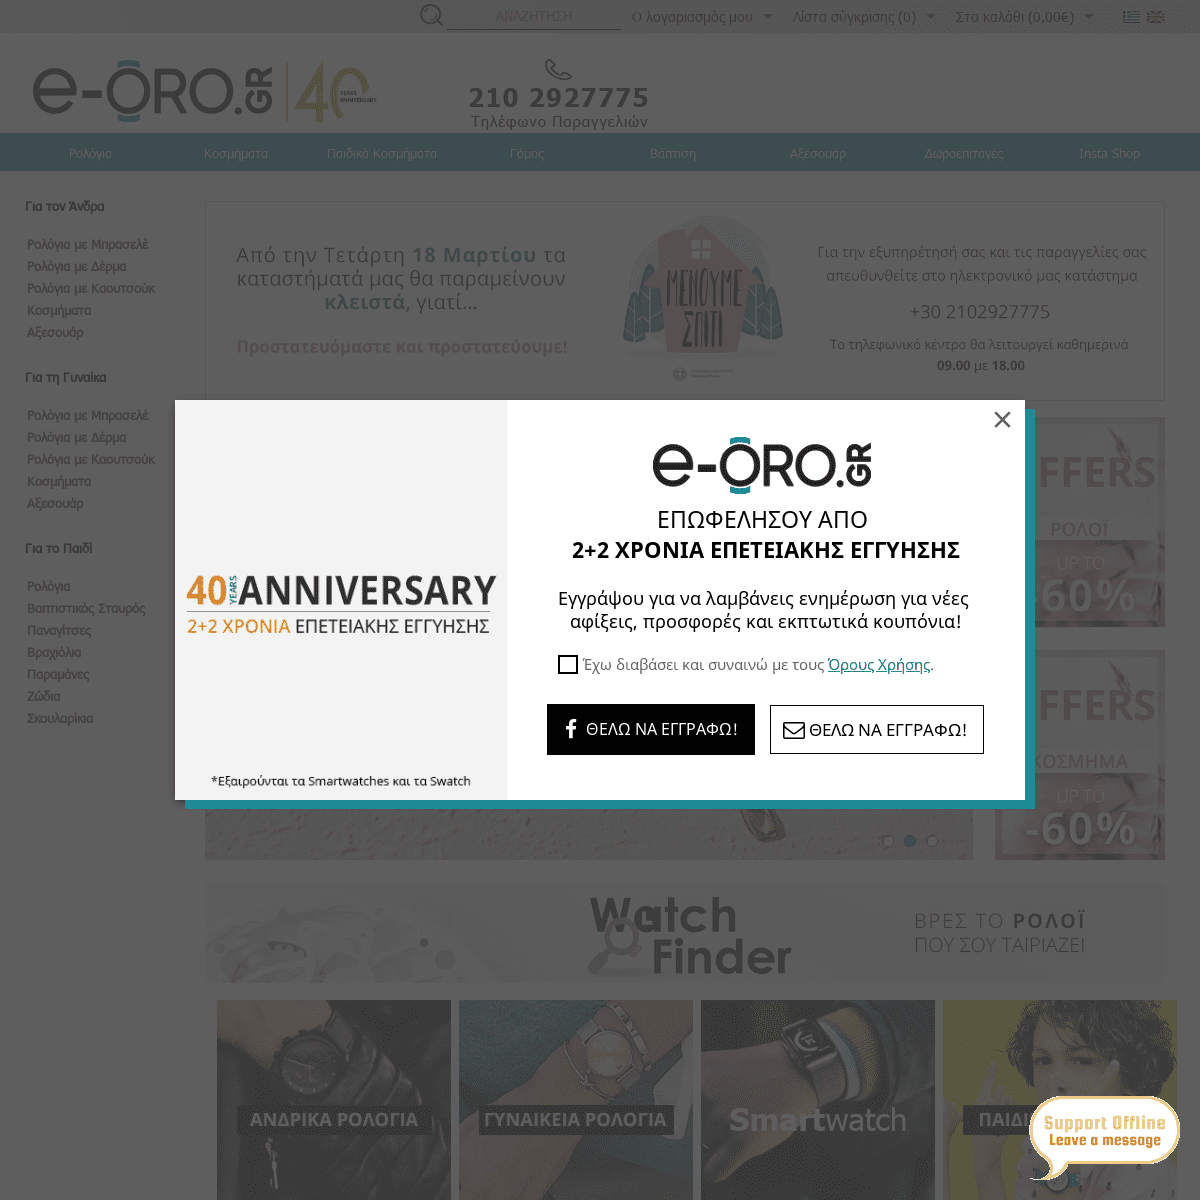 A complete backup of e-oro.gr